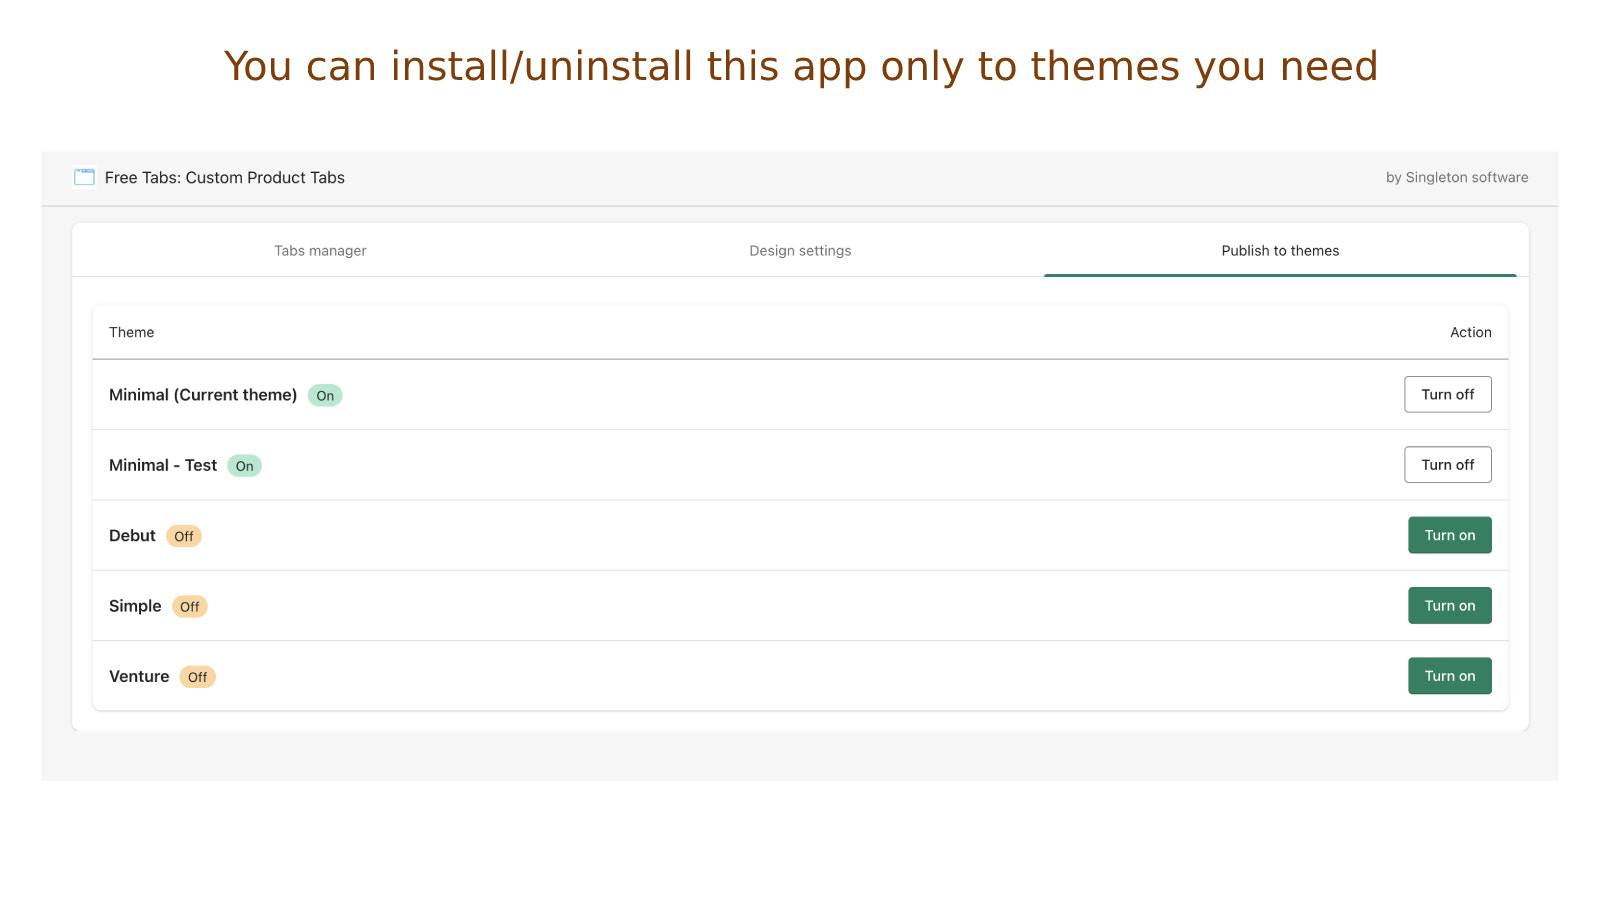 Du kan installera/avinstallera appen endast till teman du behöver